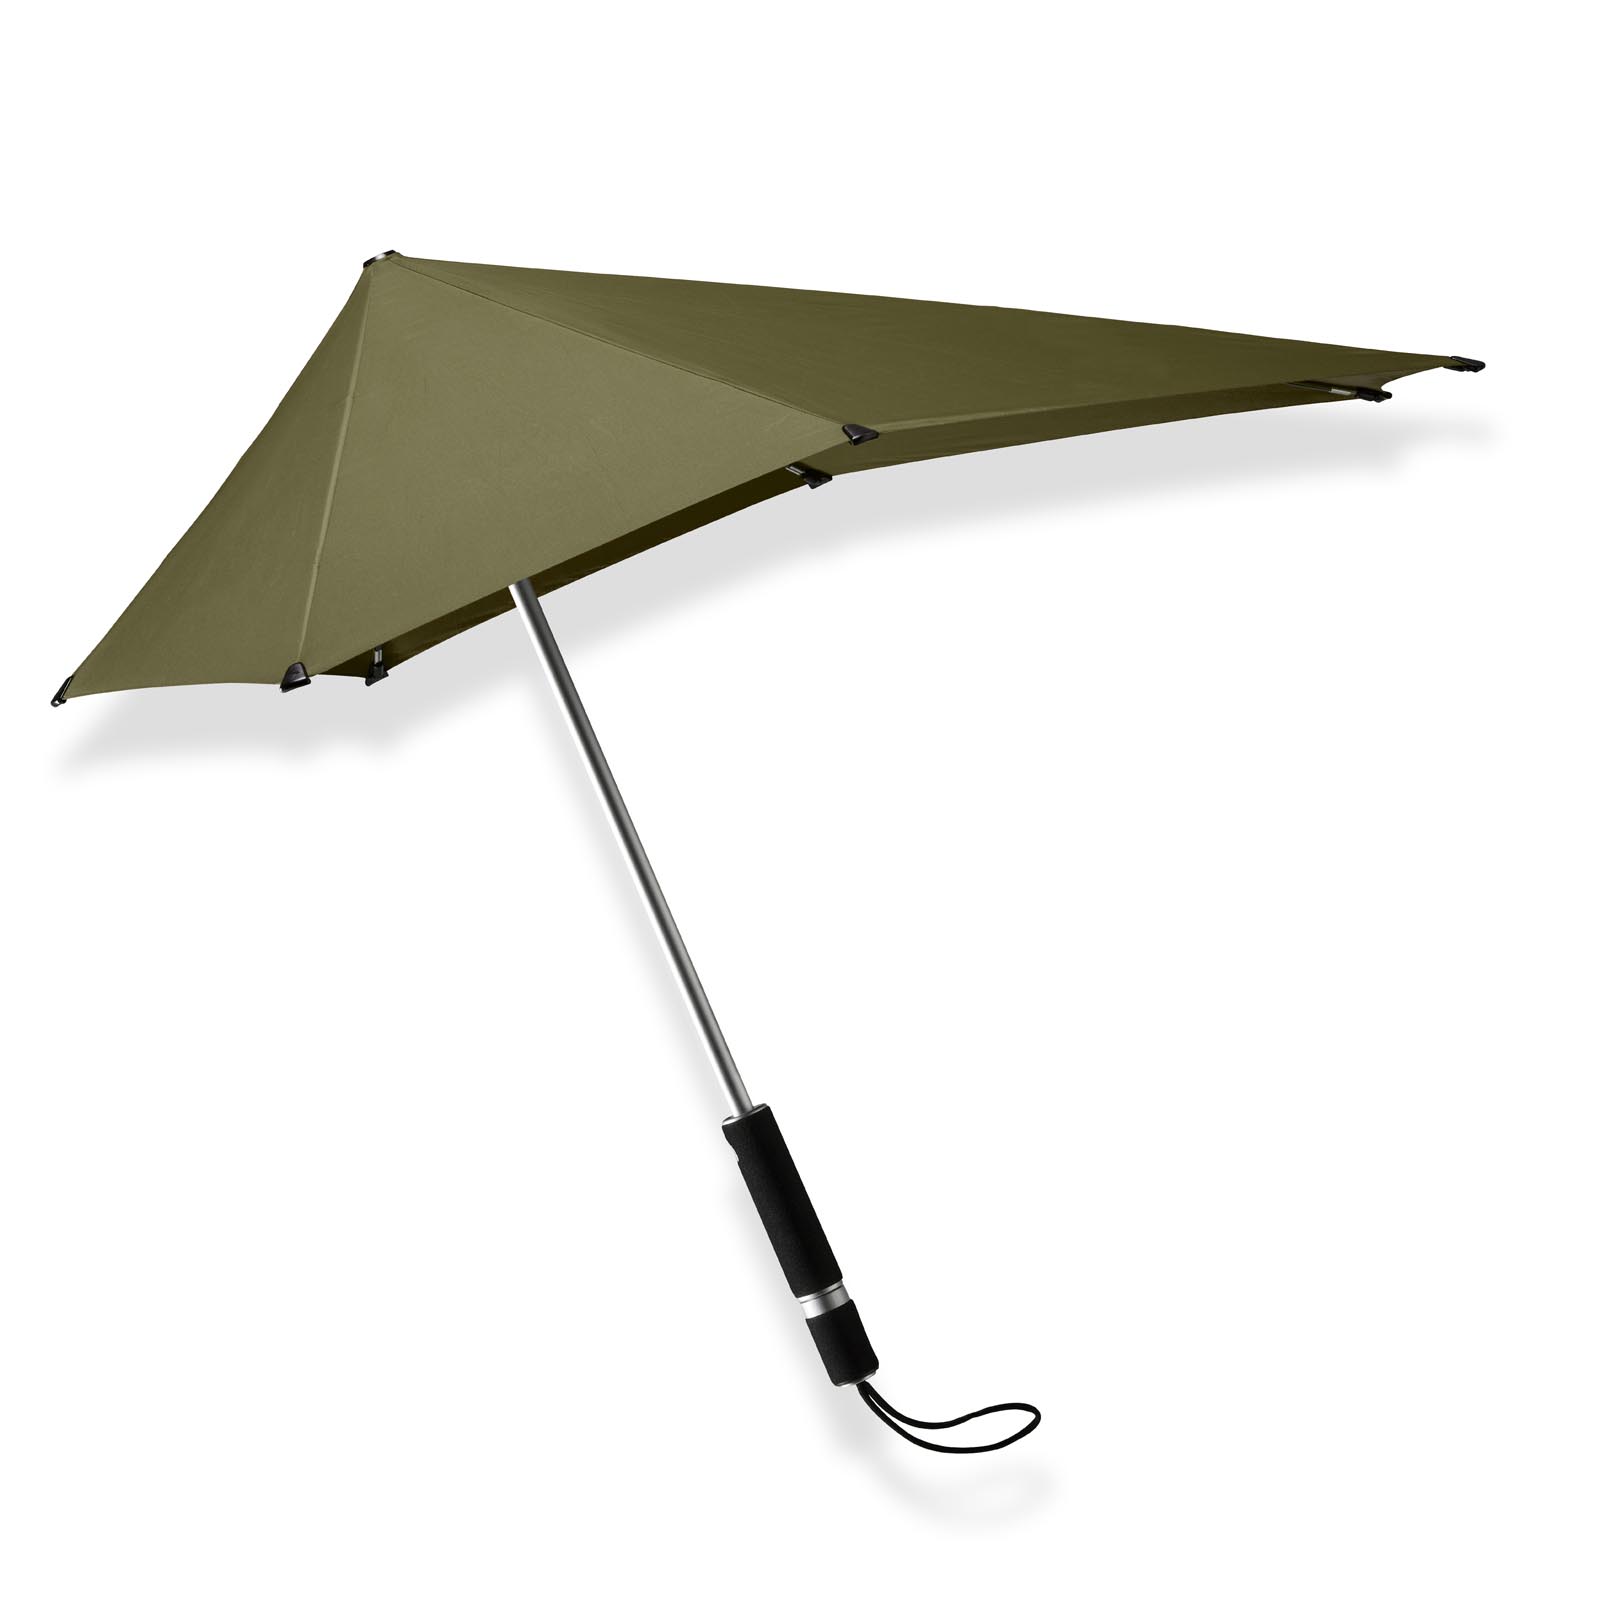 Heel herinneringen Verbeteren Groene lange paraplu original kopen? senz° original cedar green